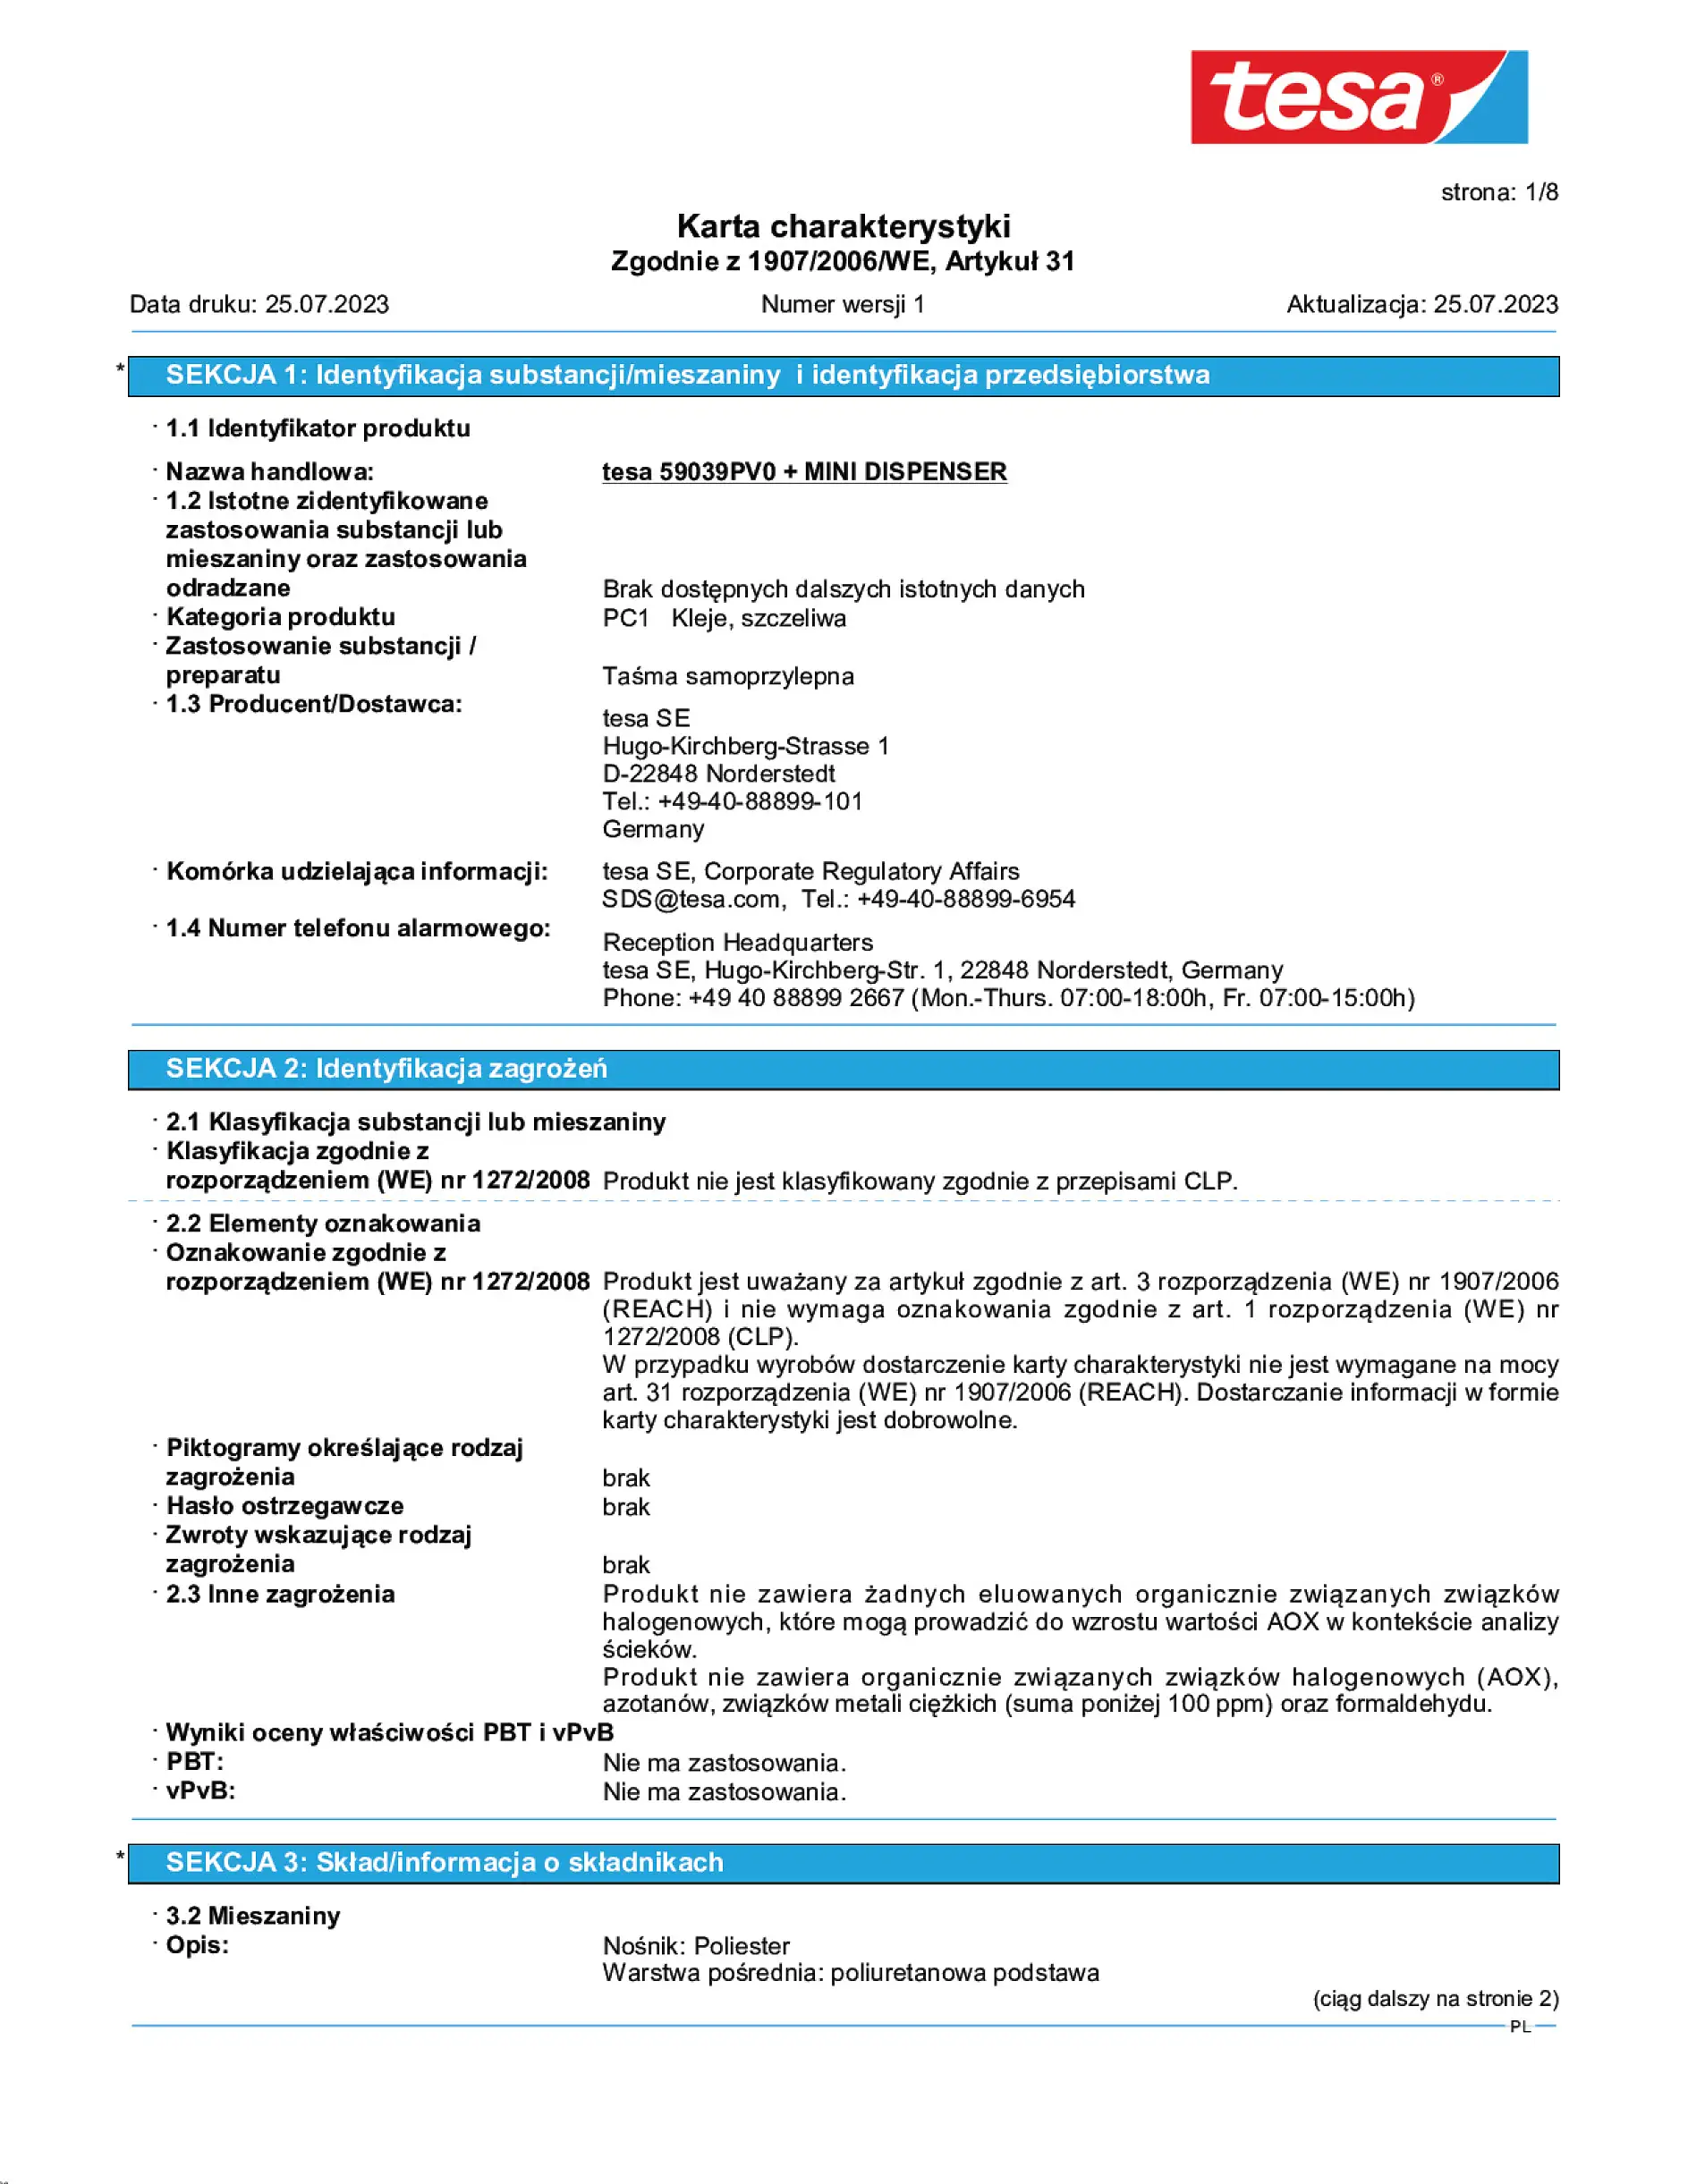 Safety data sheet_tesafilm® 59038_pl-PL_v1